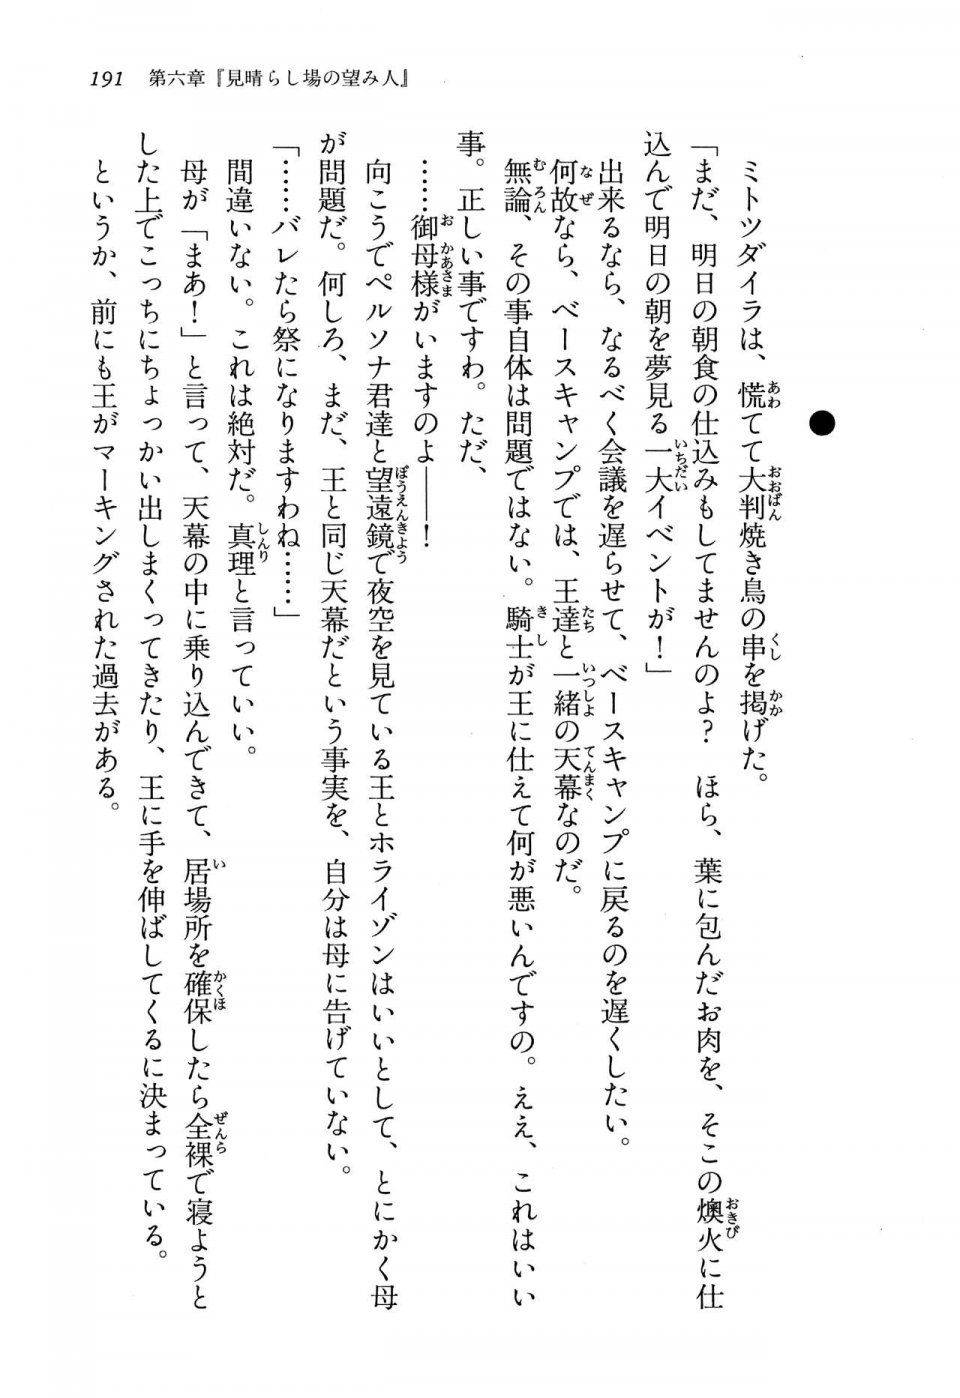 Kyoukai Senjou no Horizon LN Vol 13(6A) - Photo #191